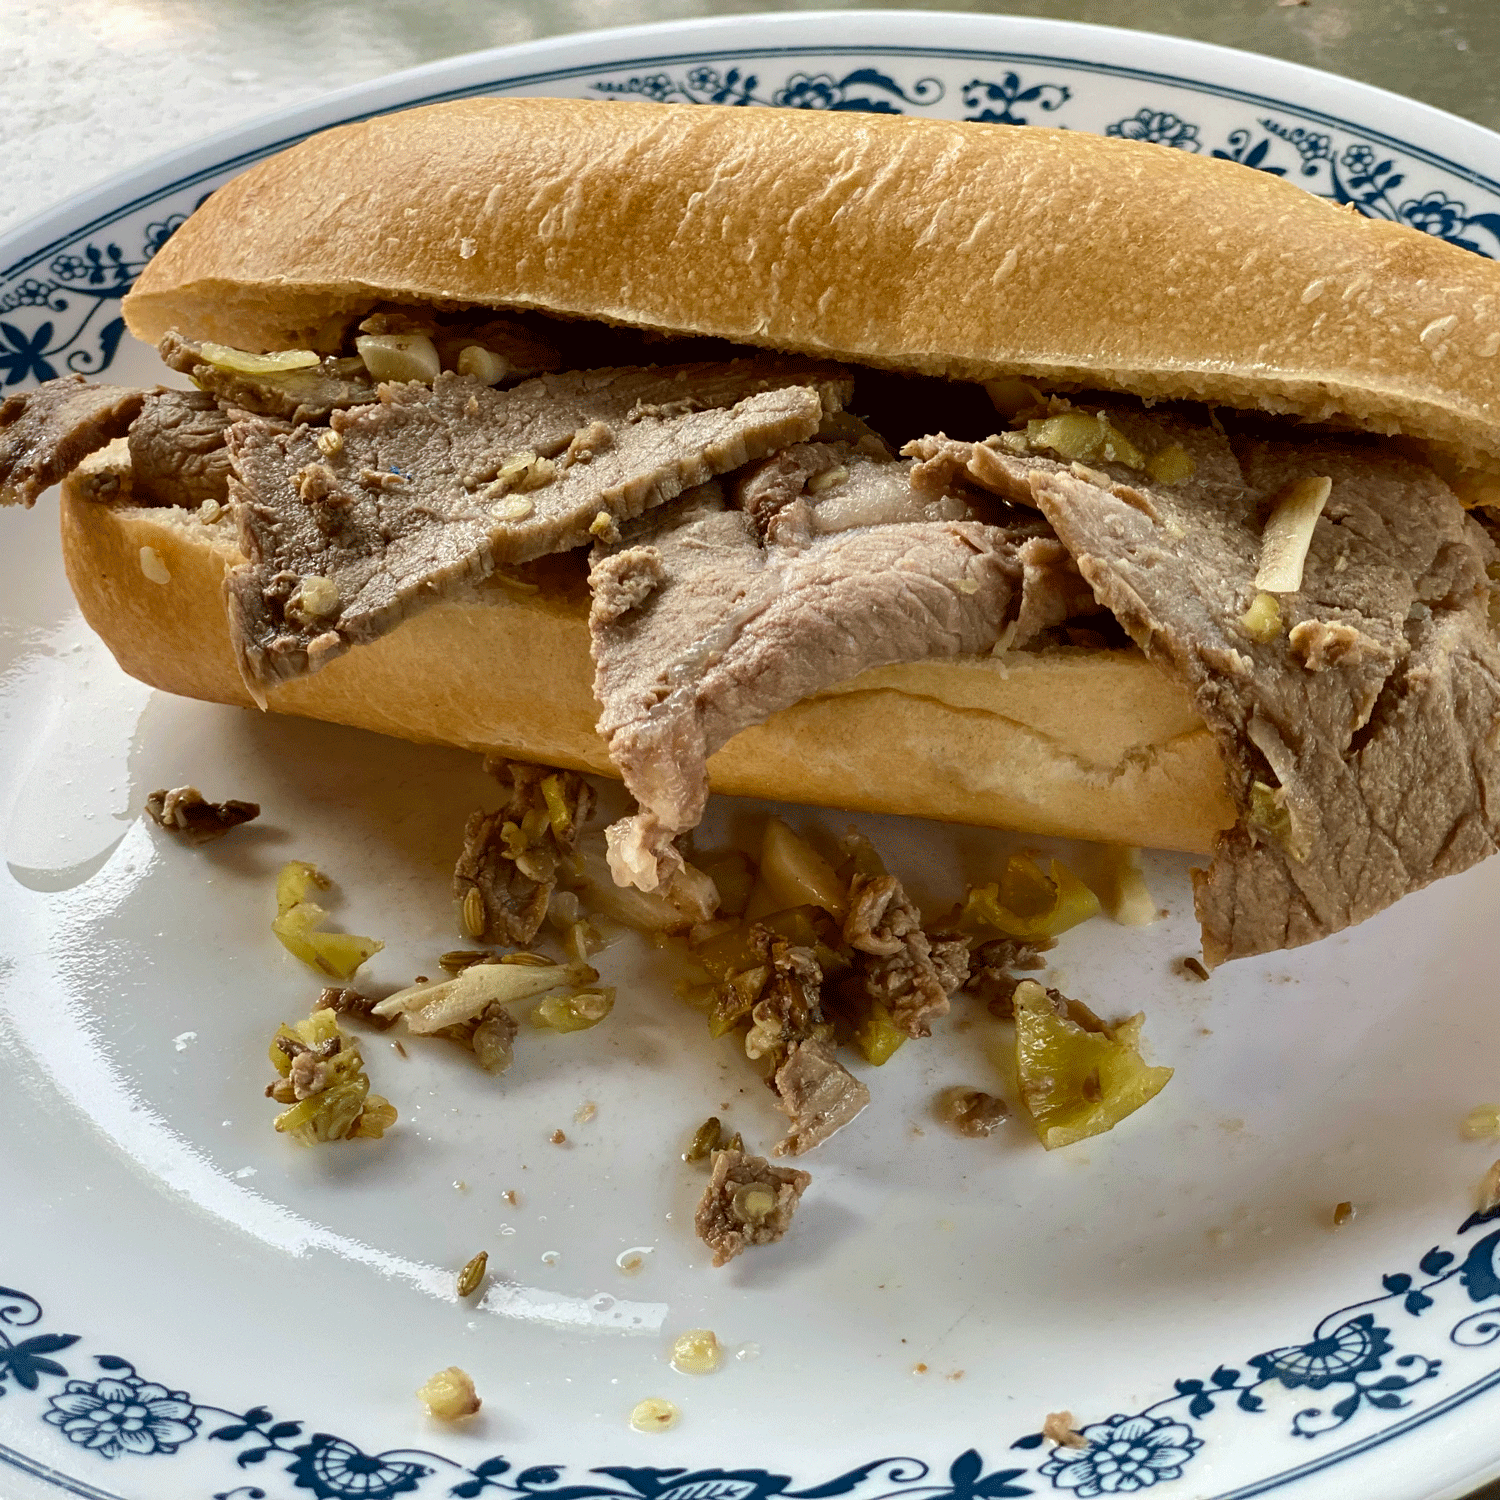 Italian beef sandwich on a plate